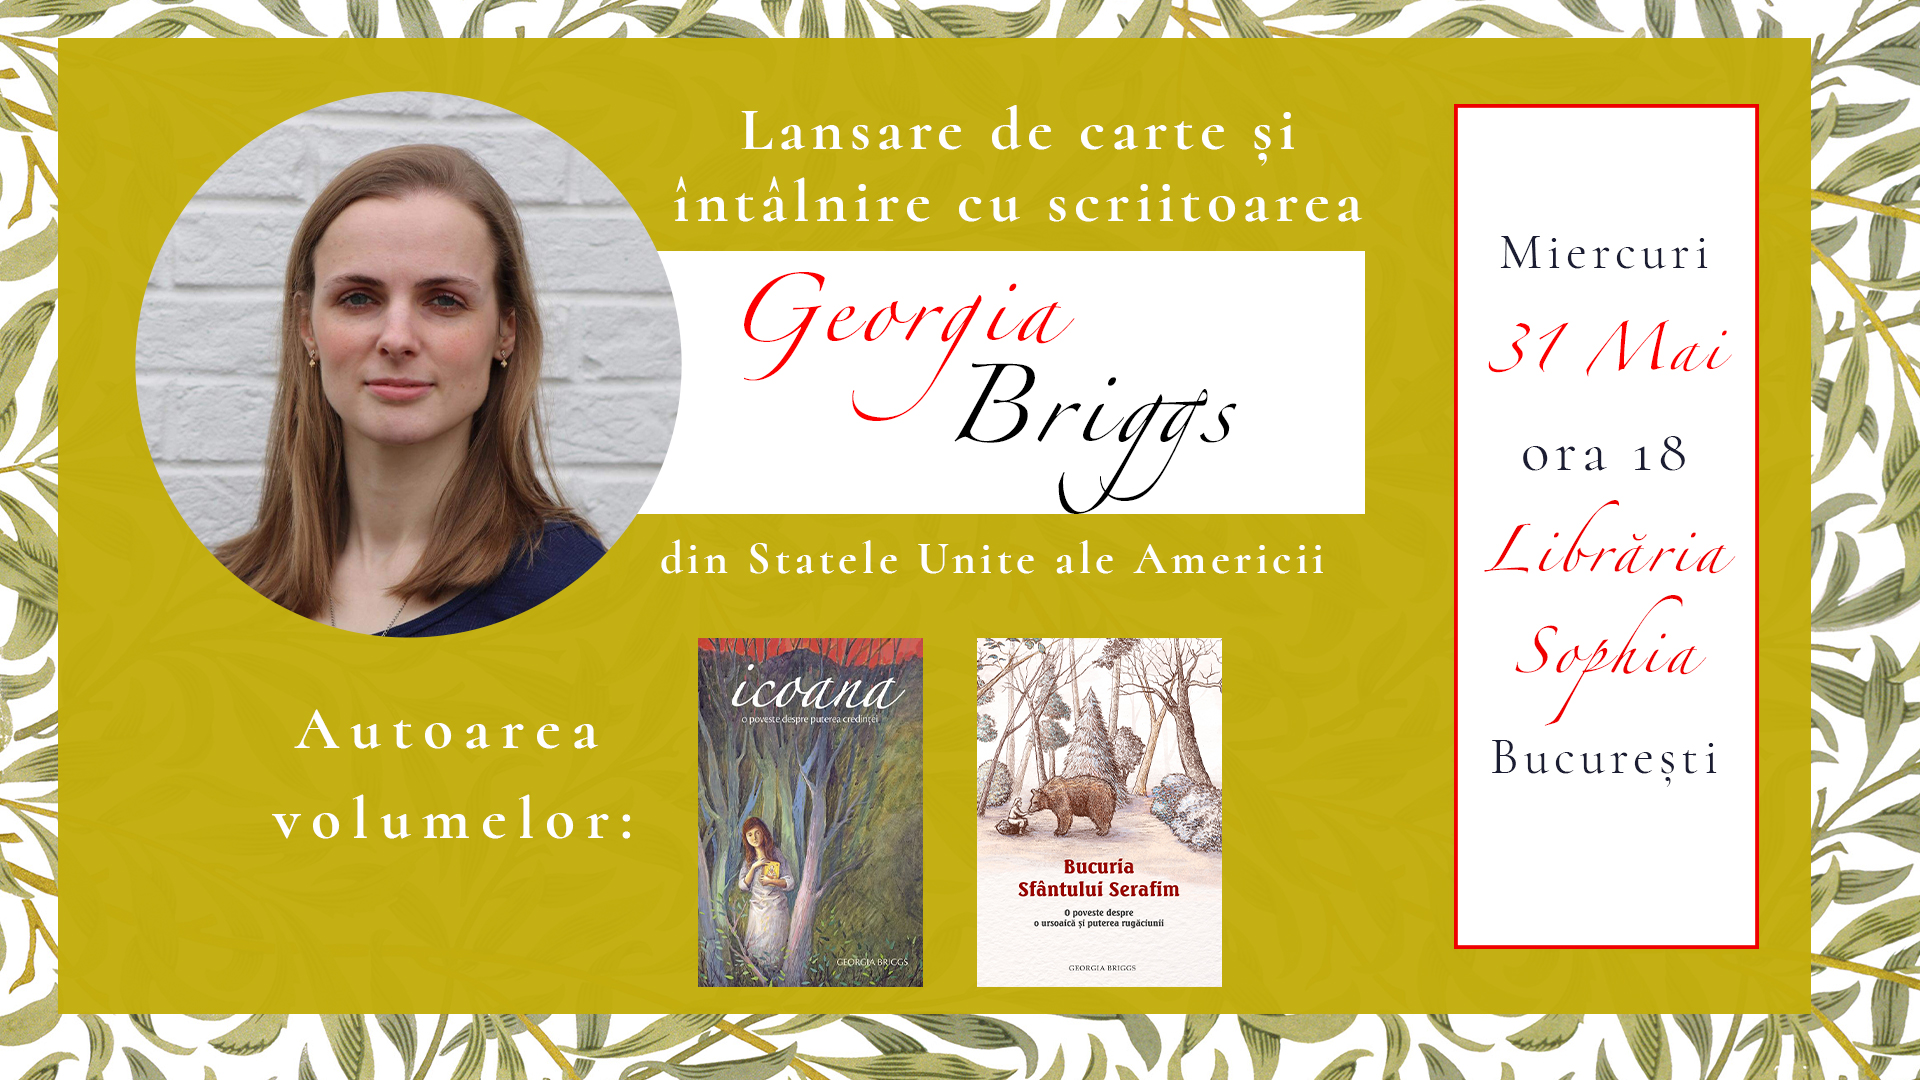 Întâlnire cu scriitoarea Georgia Briggs